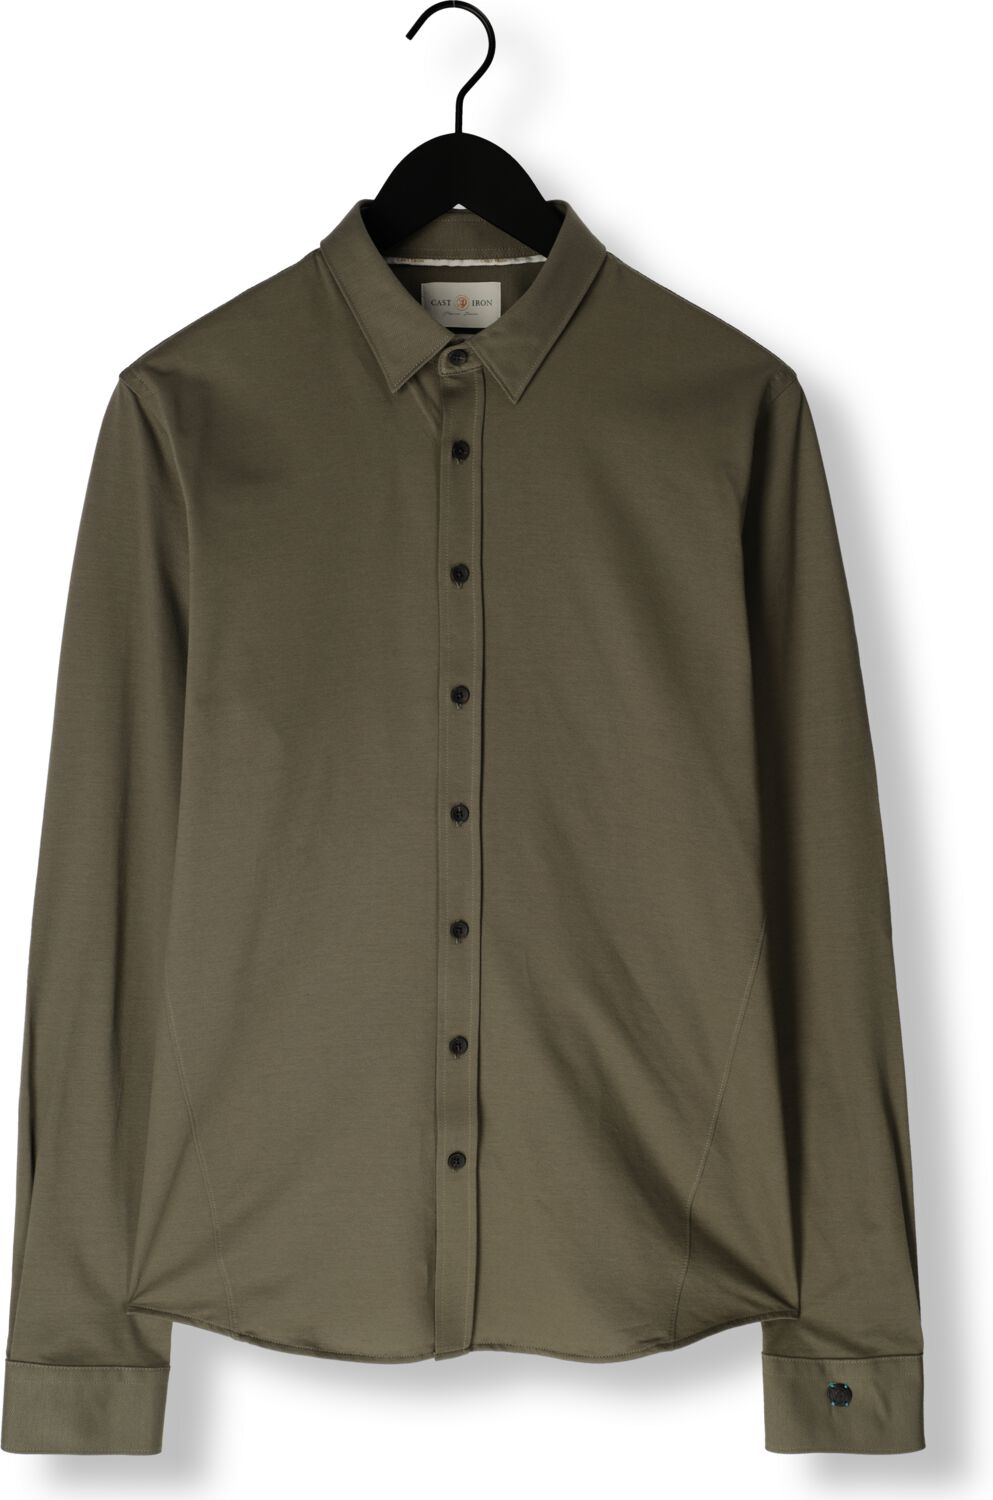 CAST IRON Heren Overhemden Long Sleeve Shirt Twill Jersey 2 Tone Groen